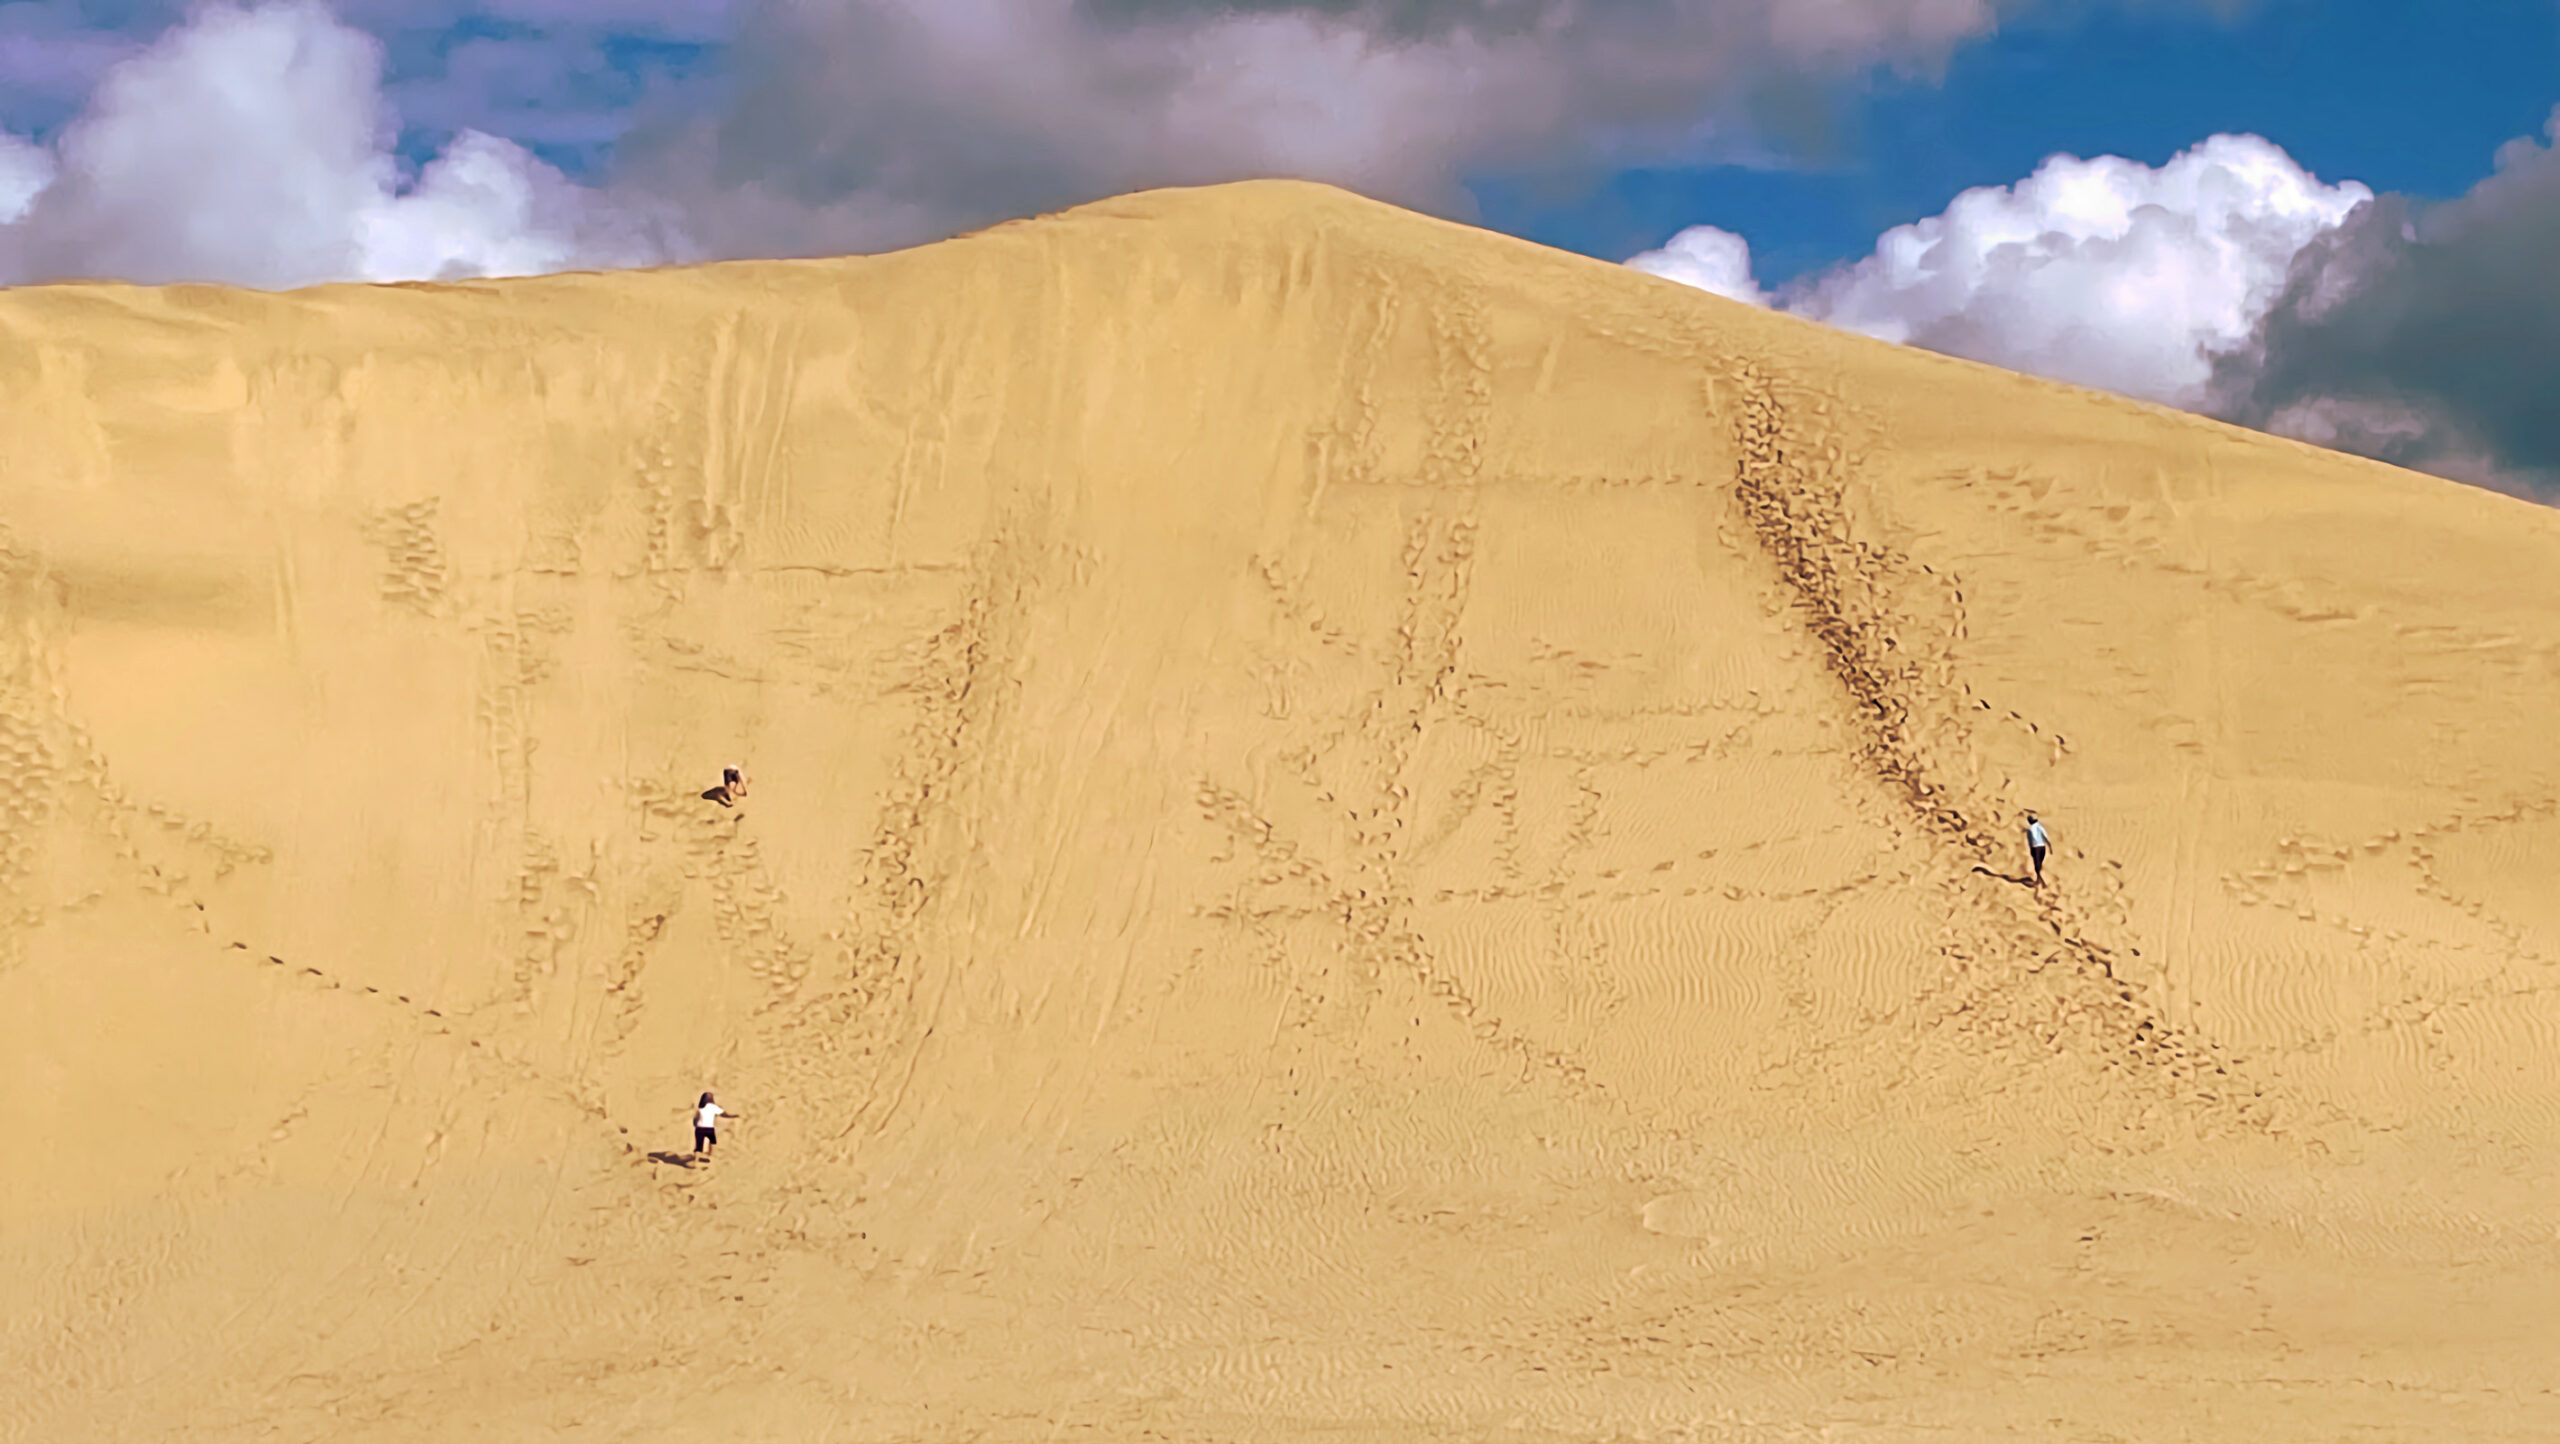 Turister på sandboarding ved de gigantiske sandklitter i Te Paki